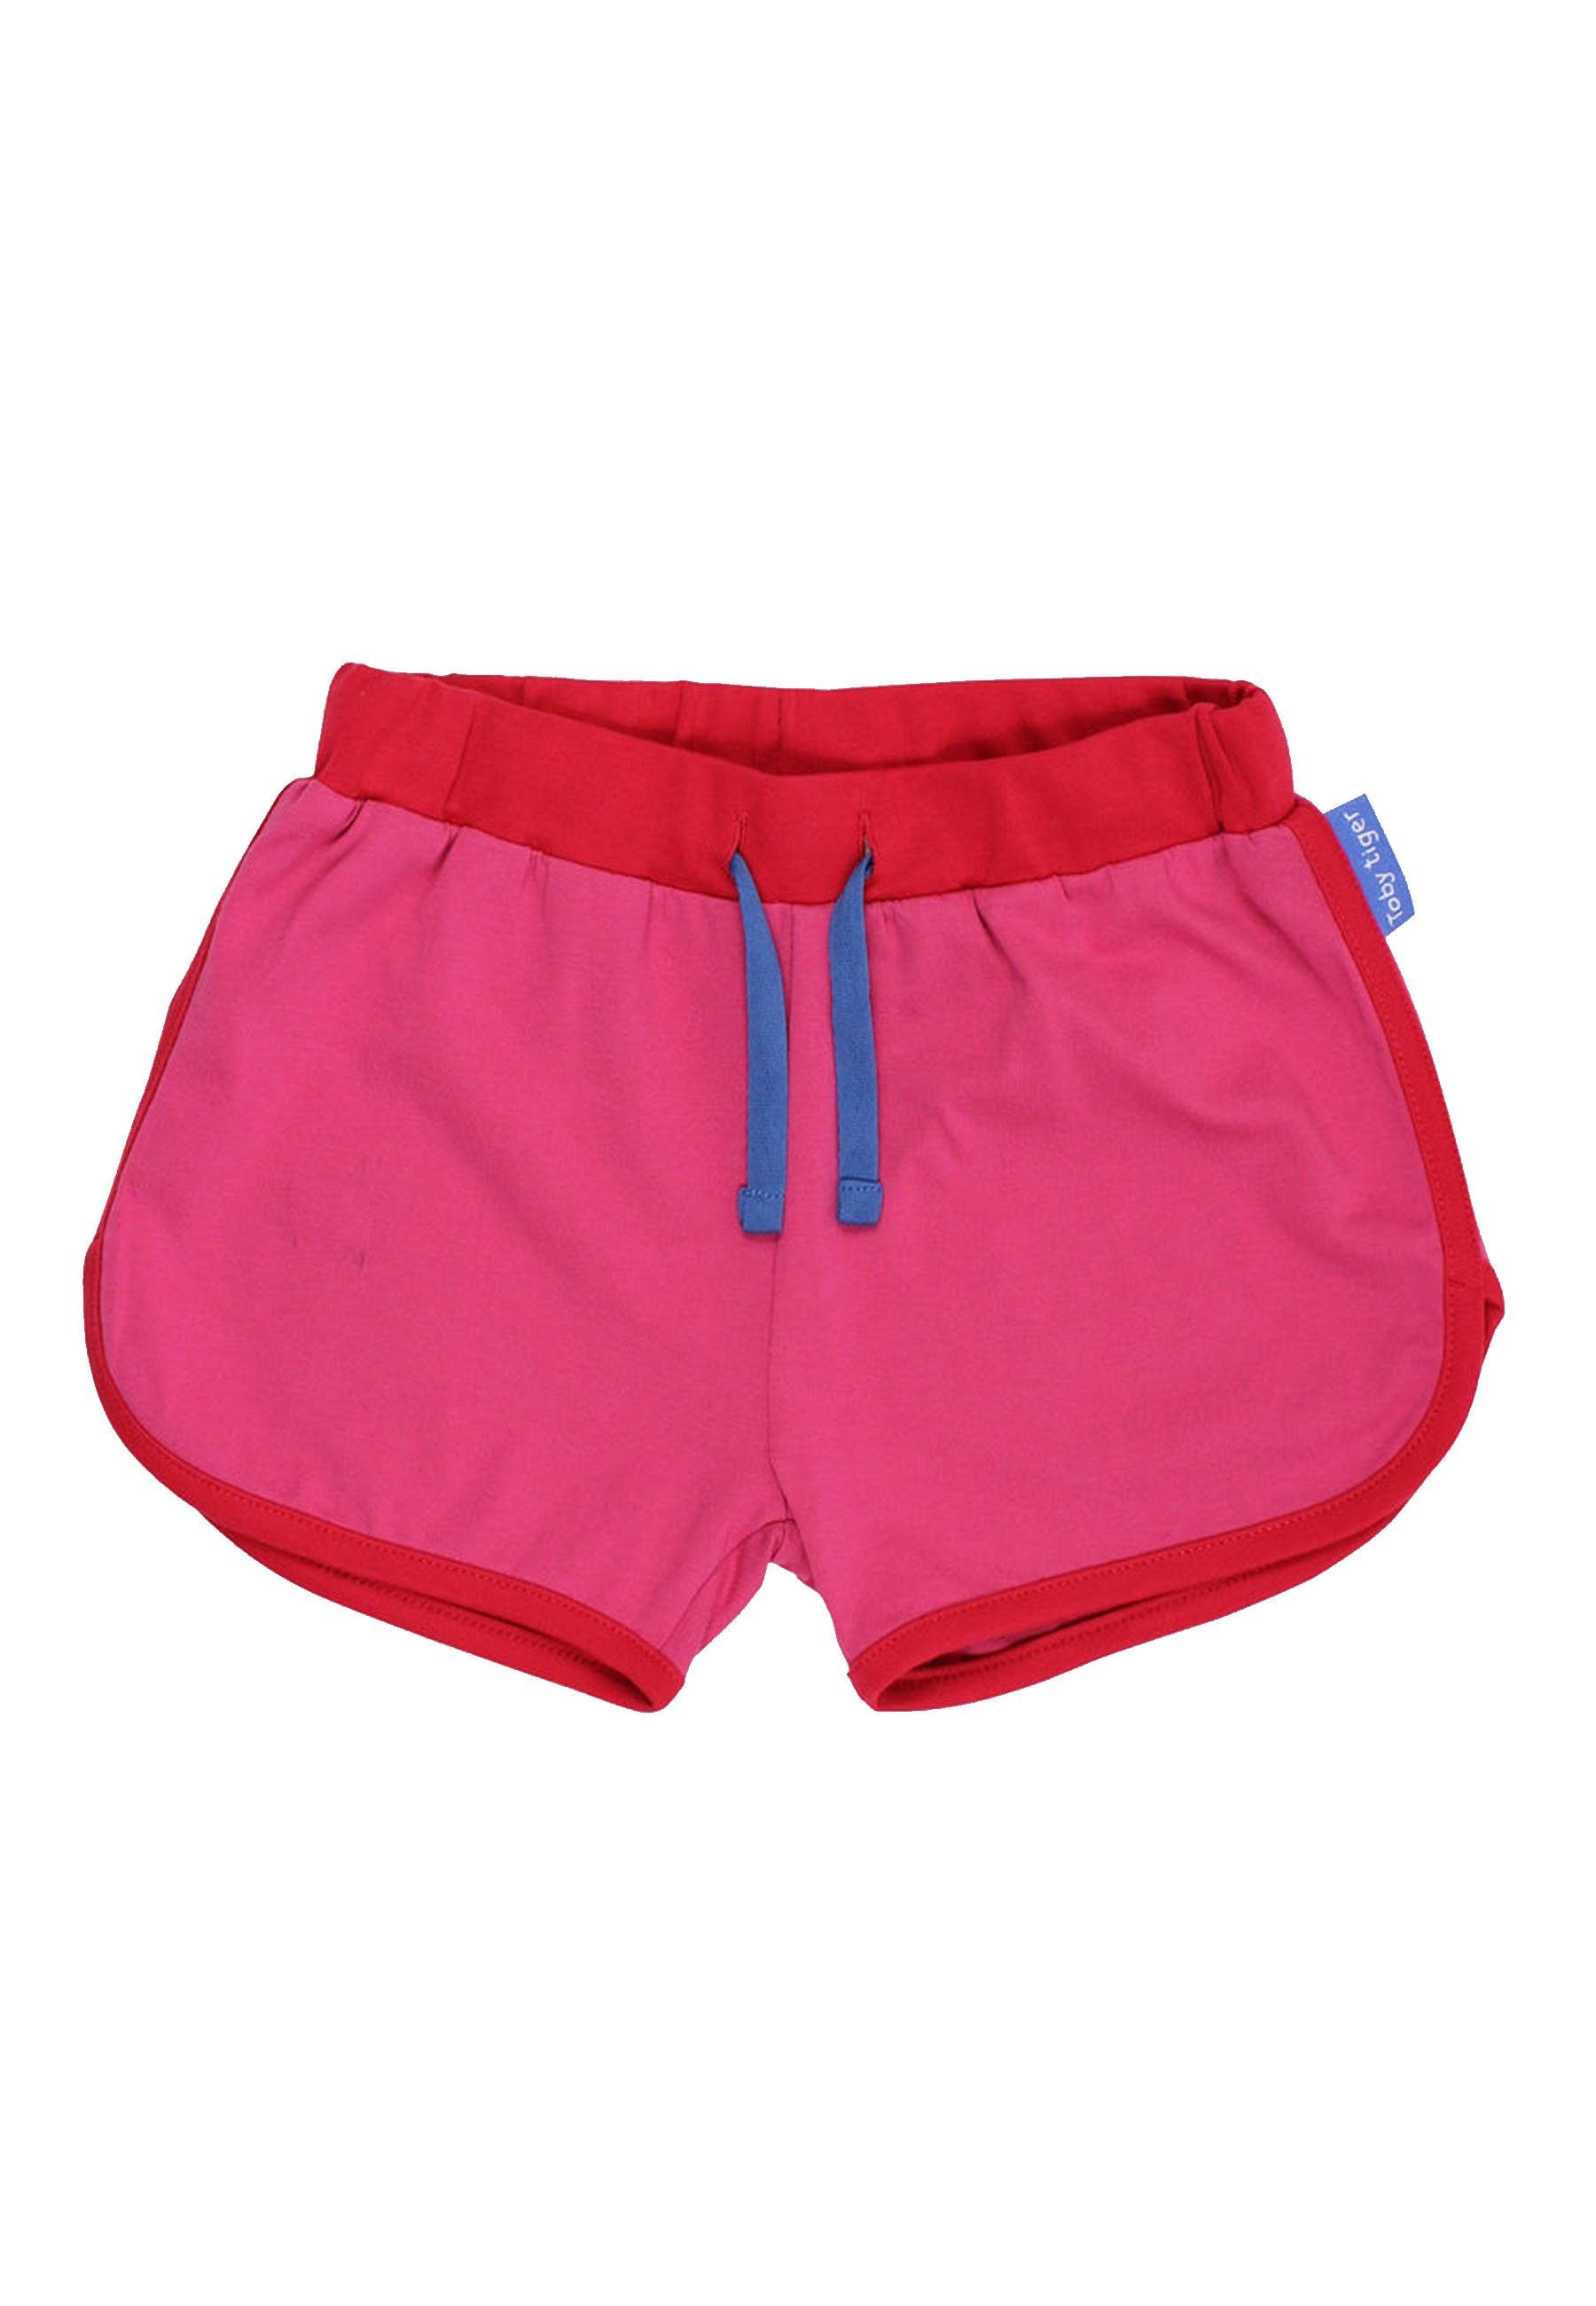 Toby Tiger Shorts Shorts | Shorts